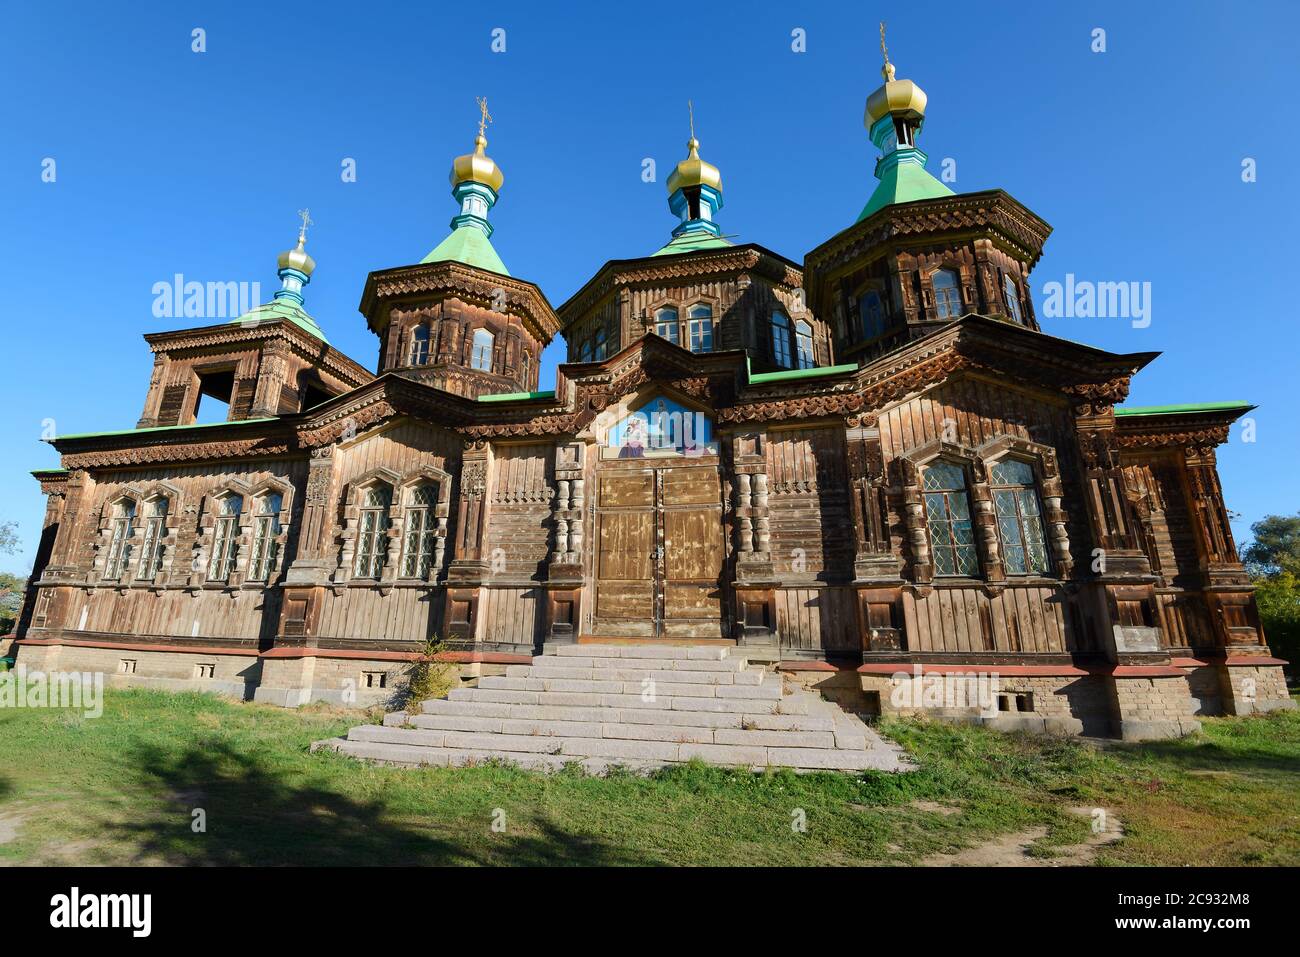 Heilige Dreifaltigkeit Orthodoxe Kathedrale in Karakol, Kirgisistan in Issyk-Kul Region. Holzgebäude mit Fassade, die mit Schnitzereien dekoriert ist. Russisch orthodox. Stockfoto